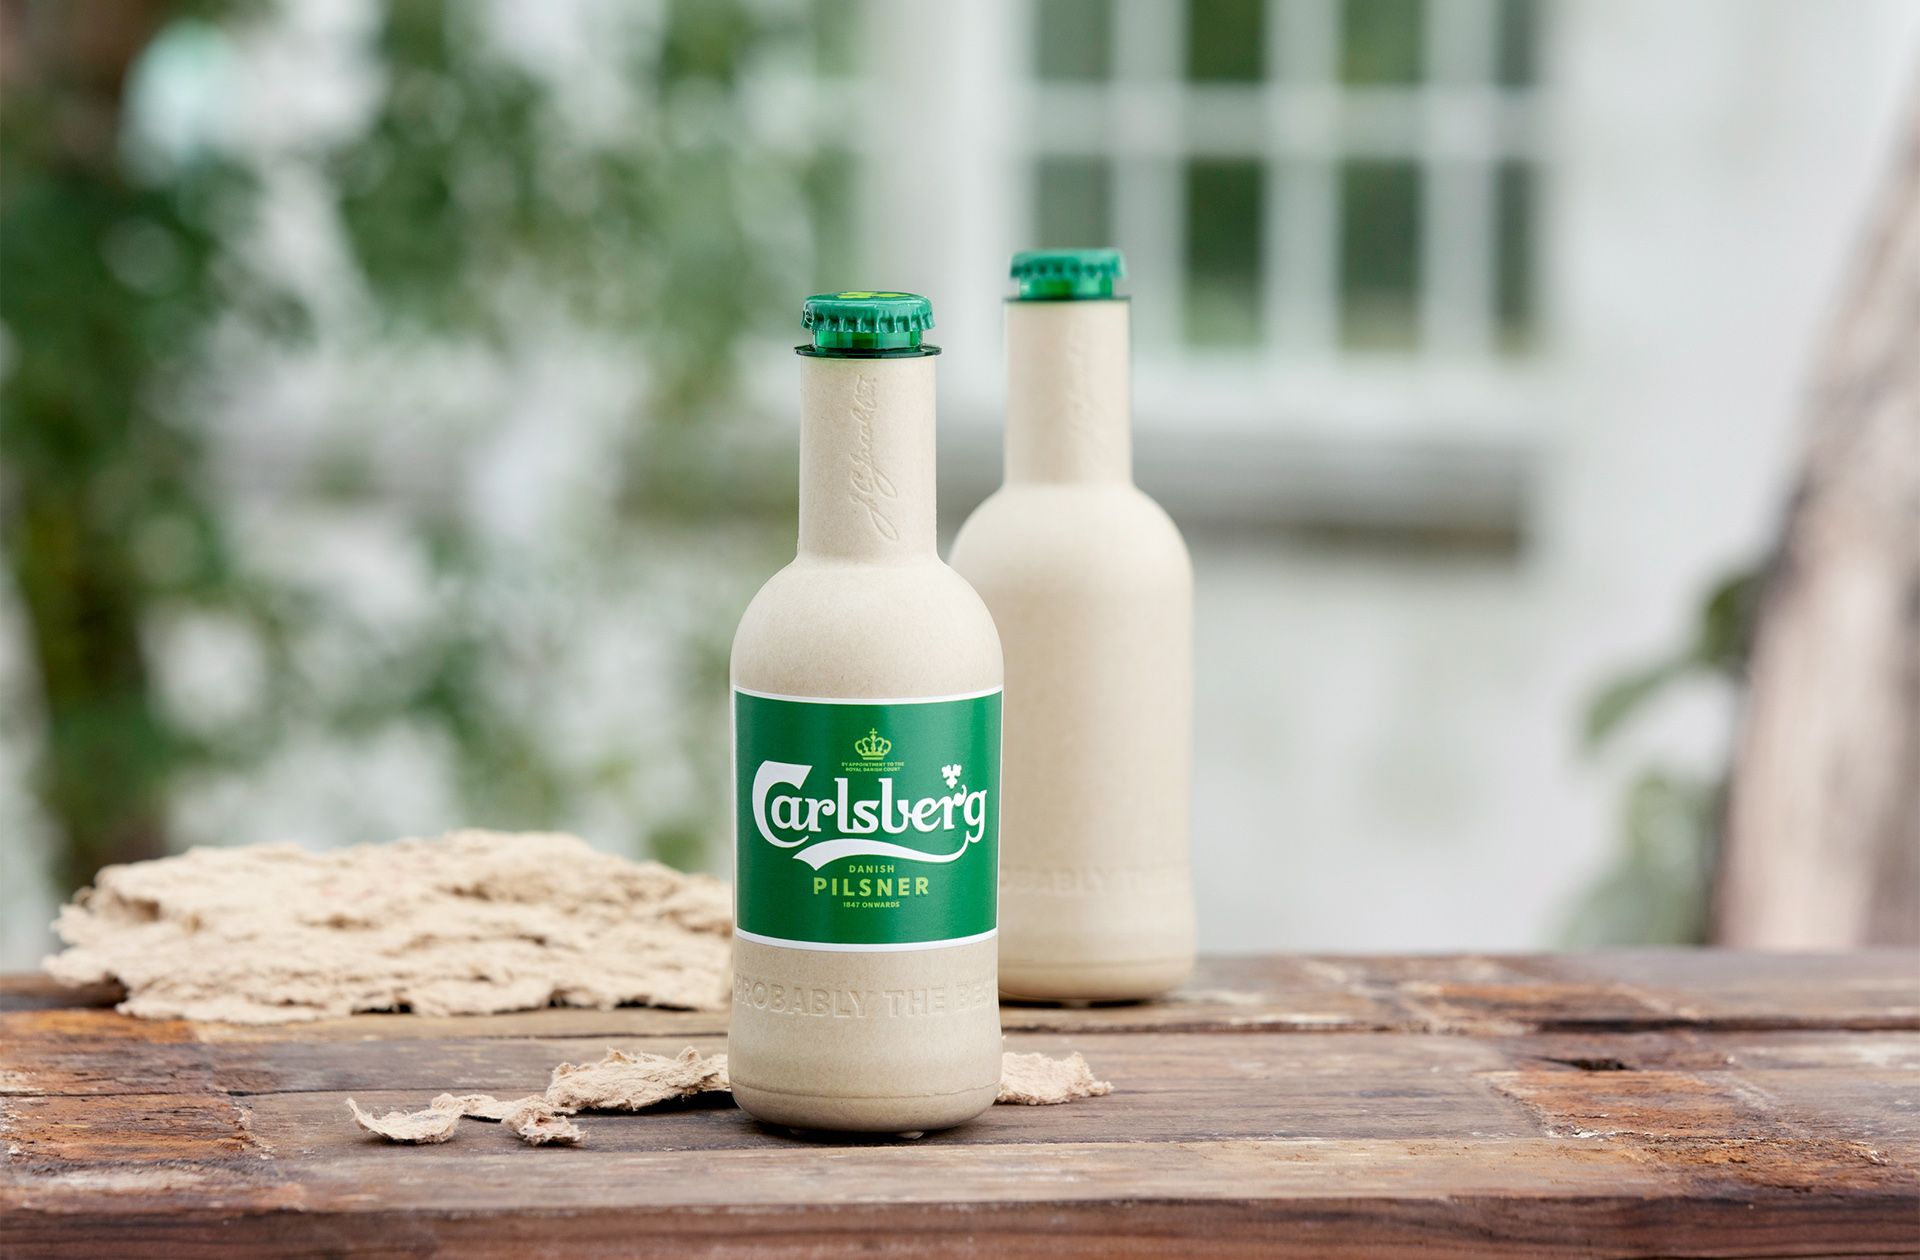 Green Fibre Bottle vuole diventare la prima bottiglia di birra al mondo biologica realizzata con risorse naturali. La bottiglia è costituita principalmente da fibre di legno naturali provenienti da fonti sostenibili certificate ed è completamente riciclabile. 